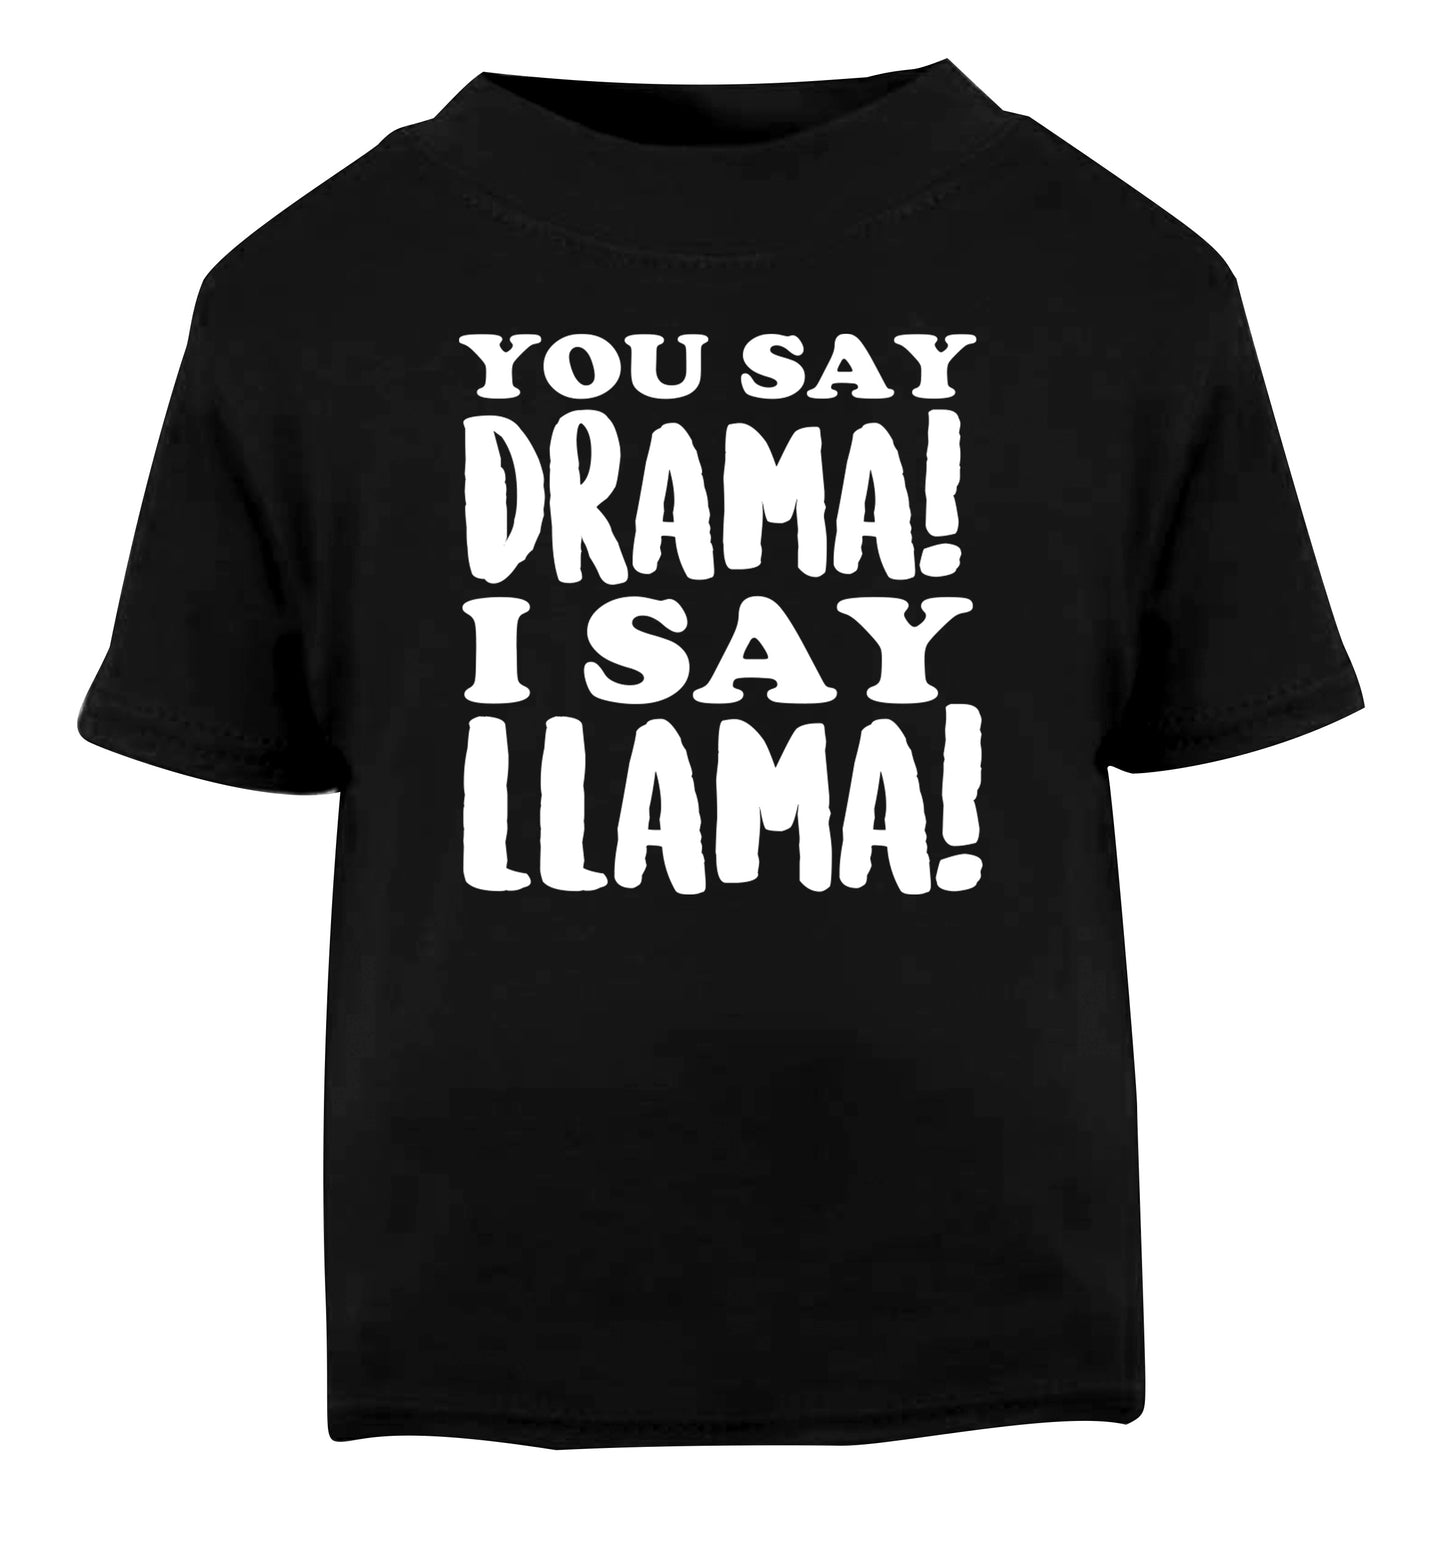 You say drama I say llama! Black Baby Toddler Tshirt 2 years